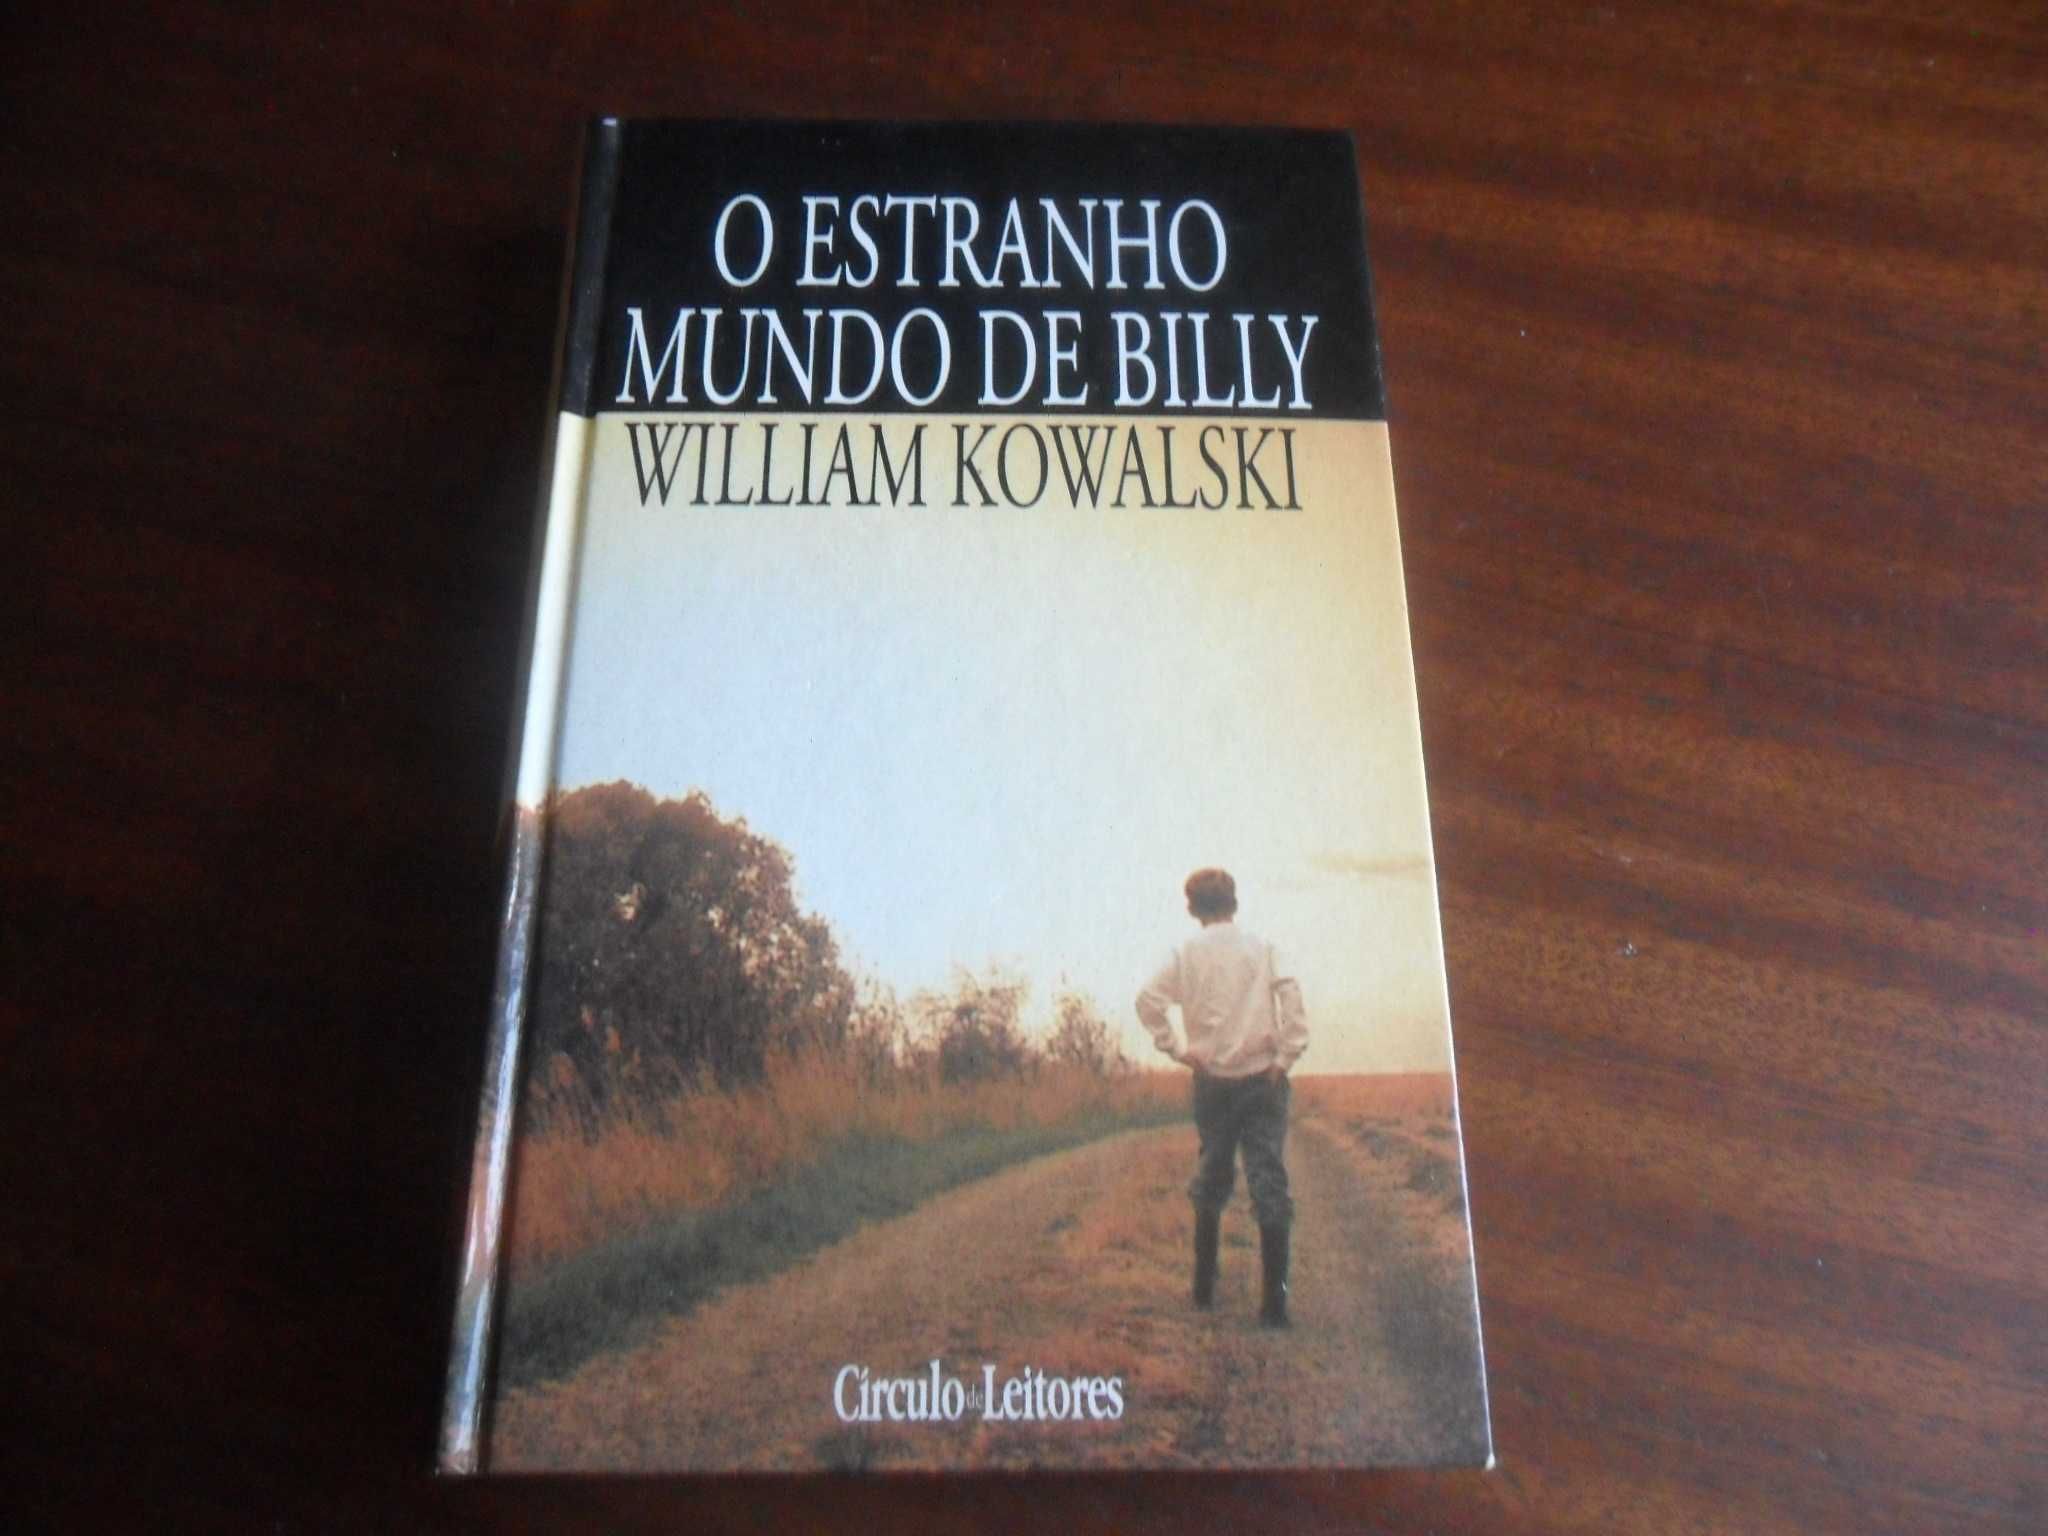 "O Estranho Mundo de Billy" de William Kowalski